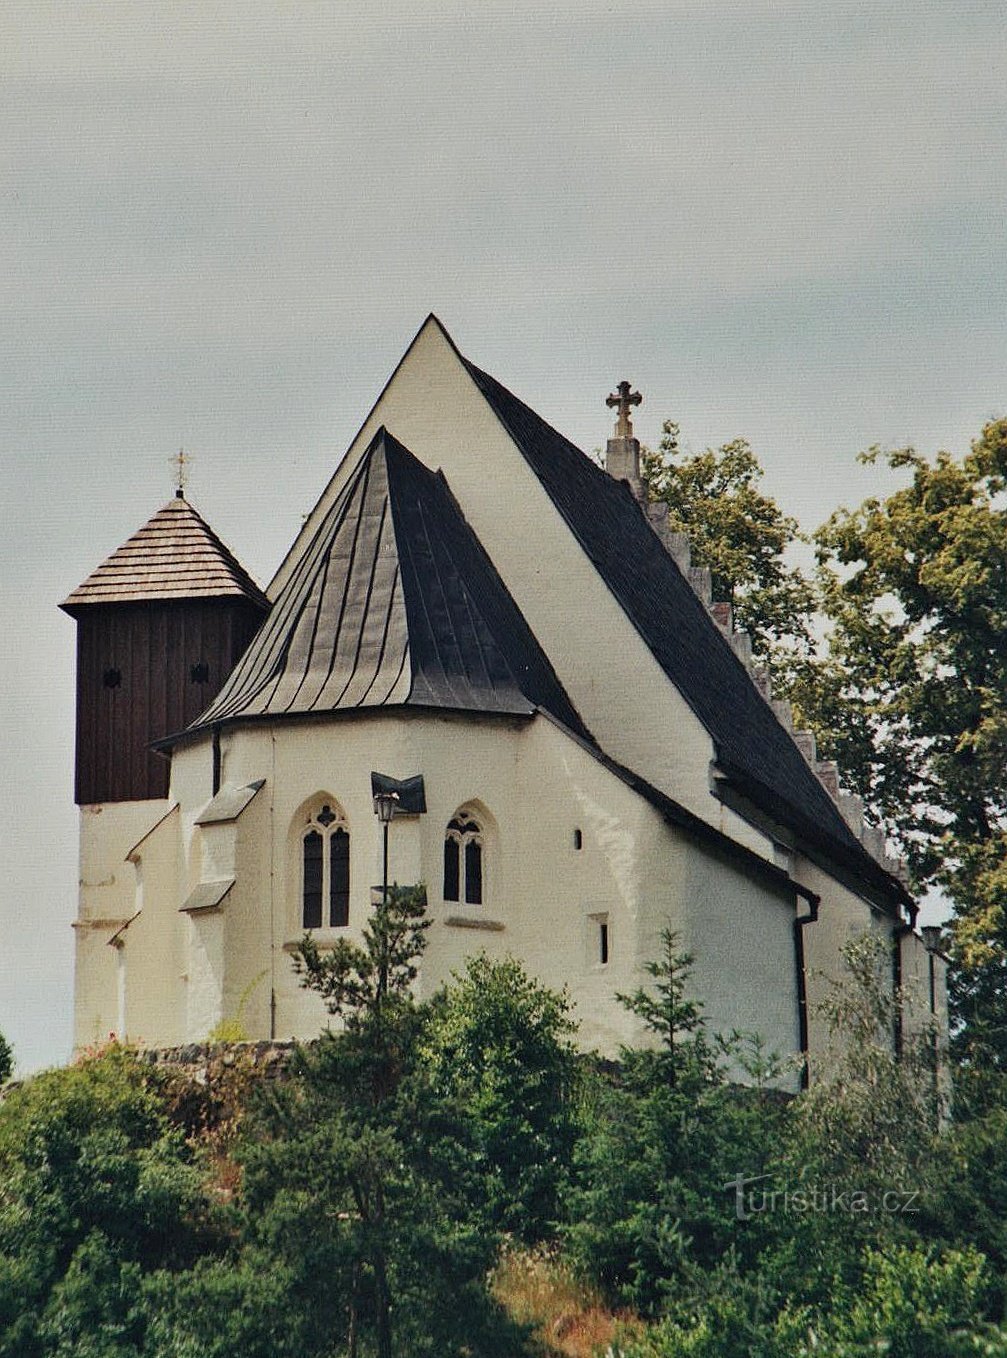 Een enigszins droevige herinnering aan een kerk of wanneer in St. Kateřina St. Katerina is niet